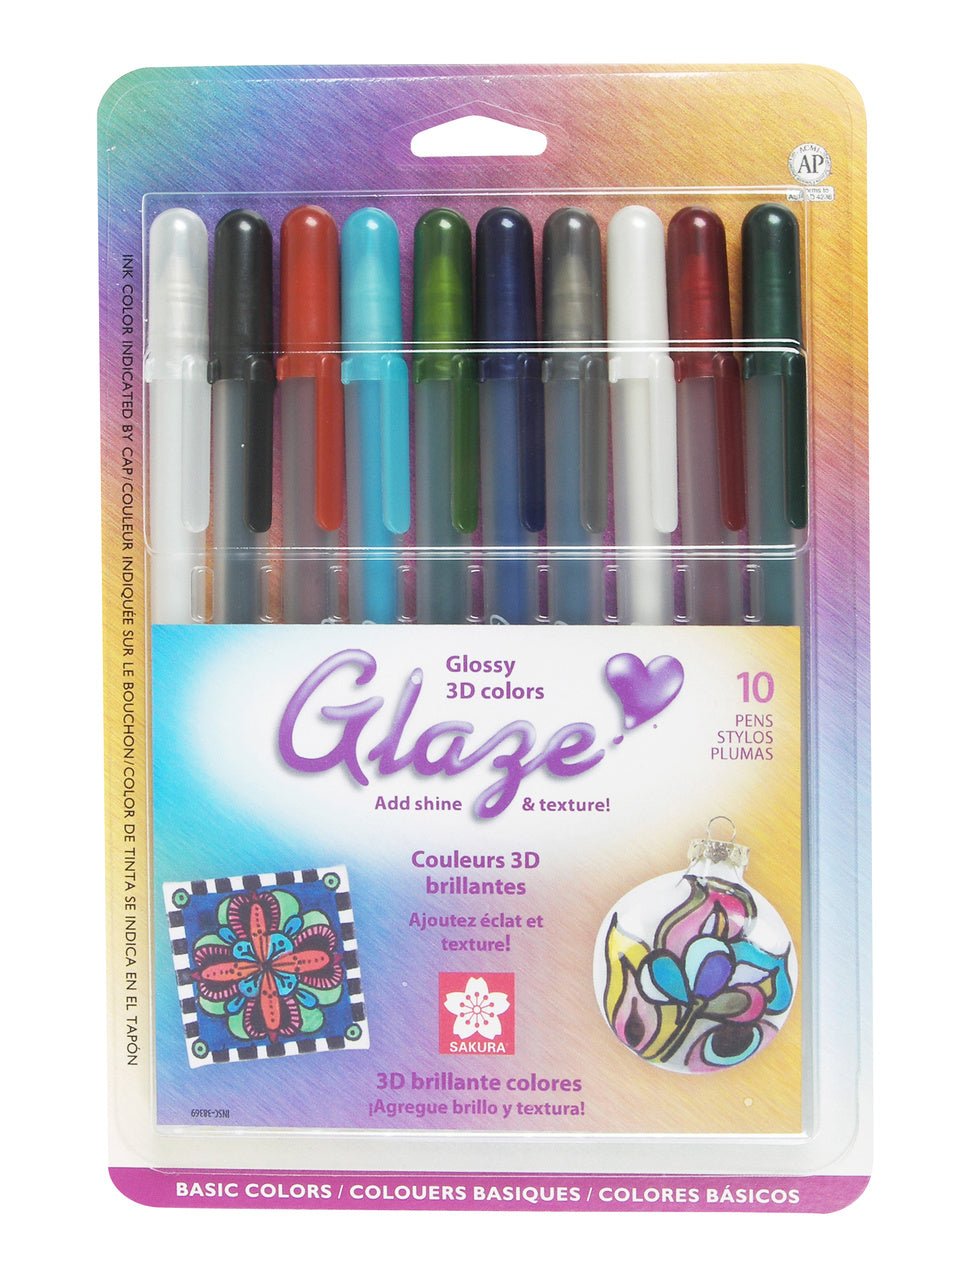 Sakura Gelly Roll Pens & Sets